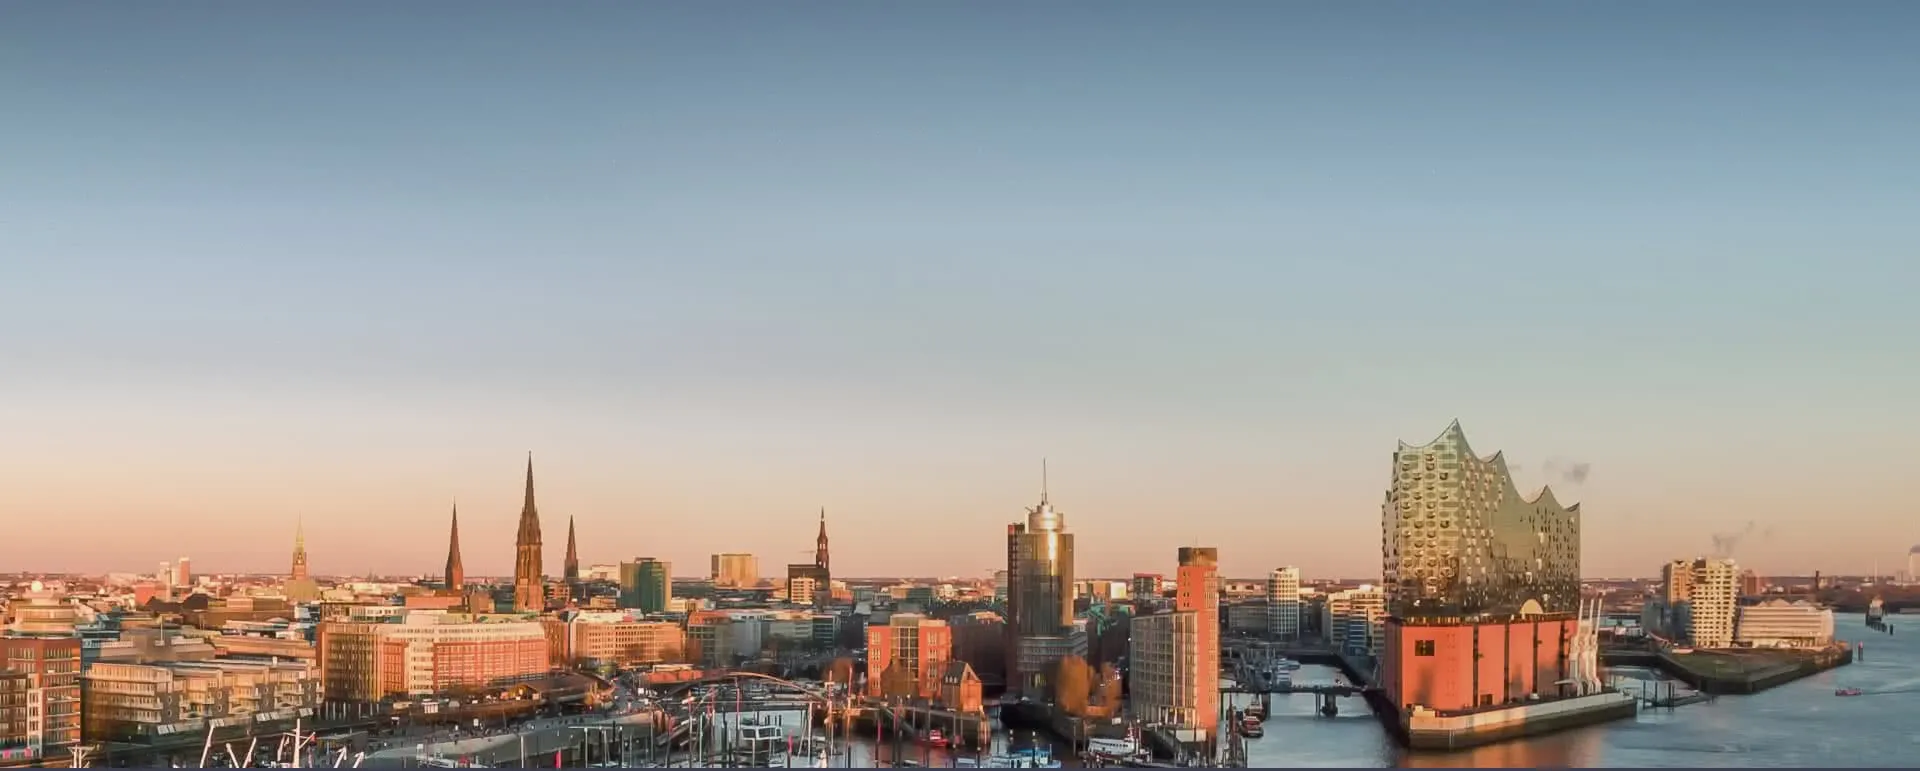 Hamburg panorama image